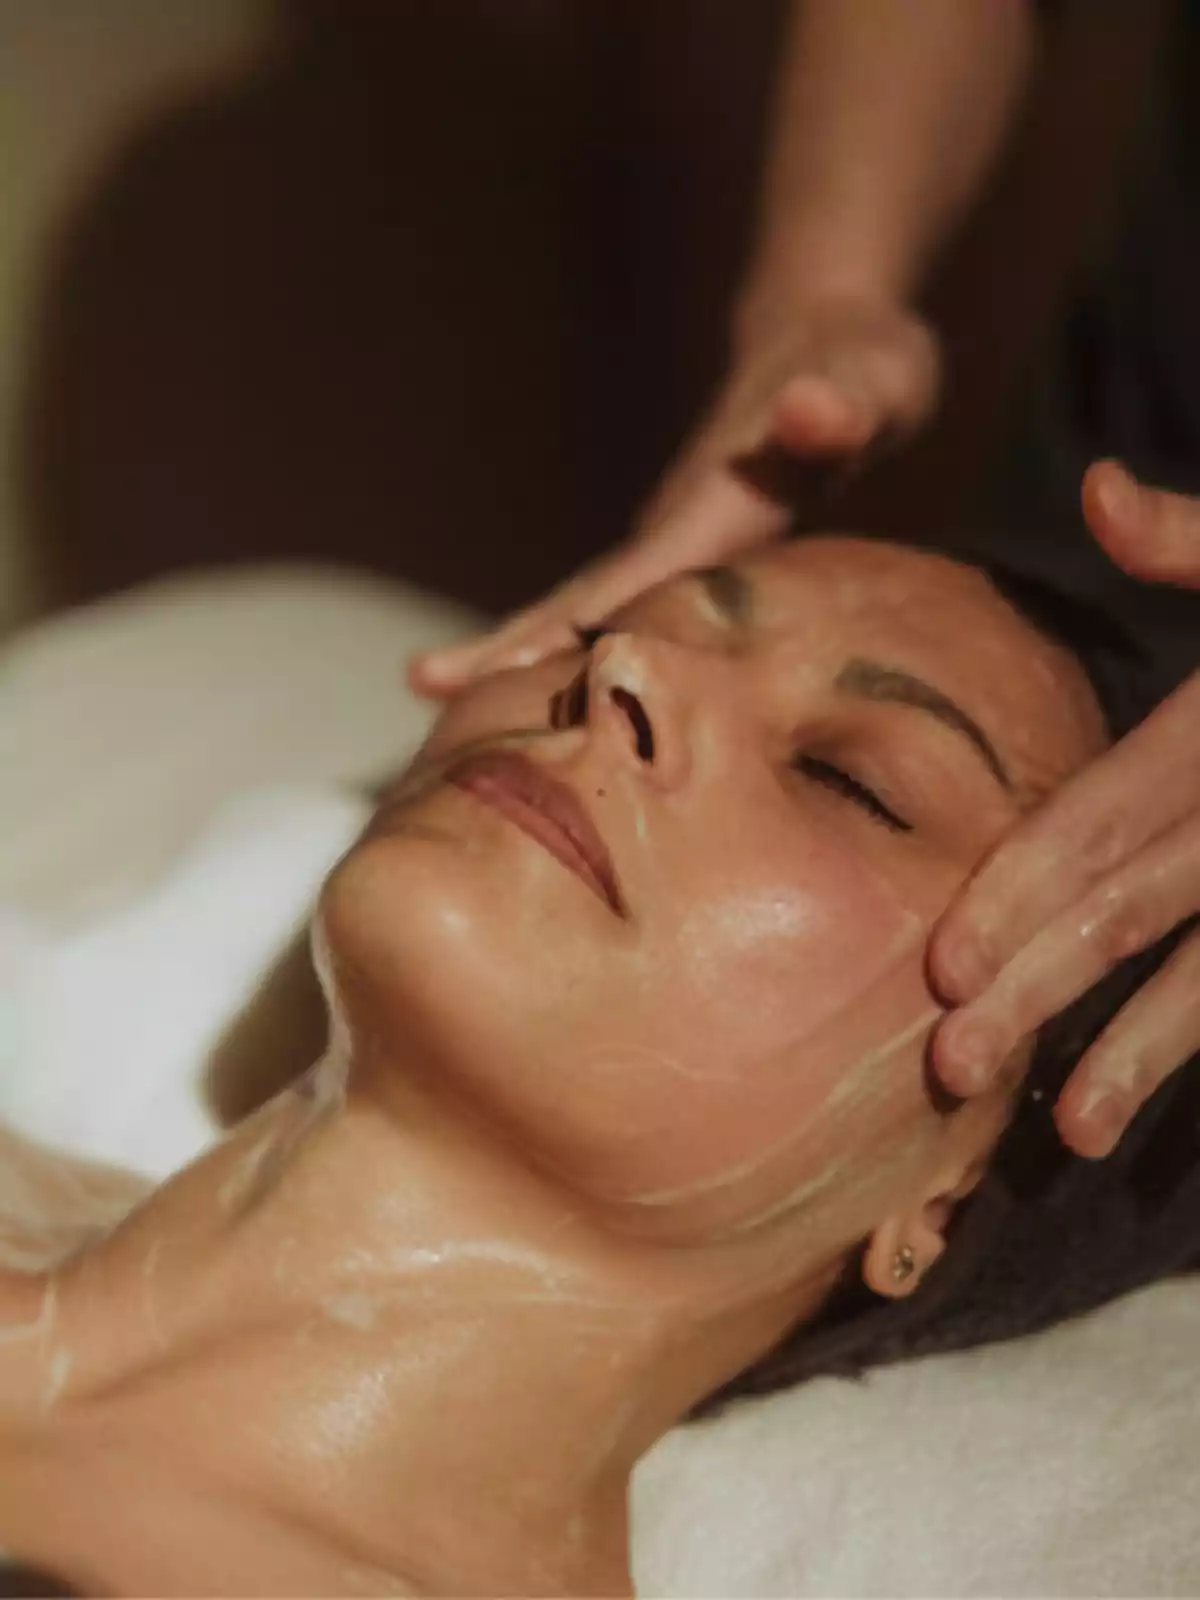 Persona recibiendo un masaje facial relajante con los ojos cerrados.